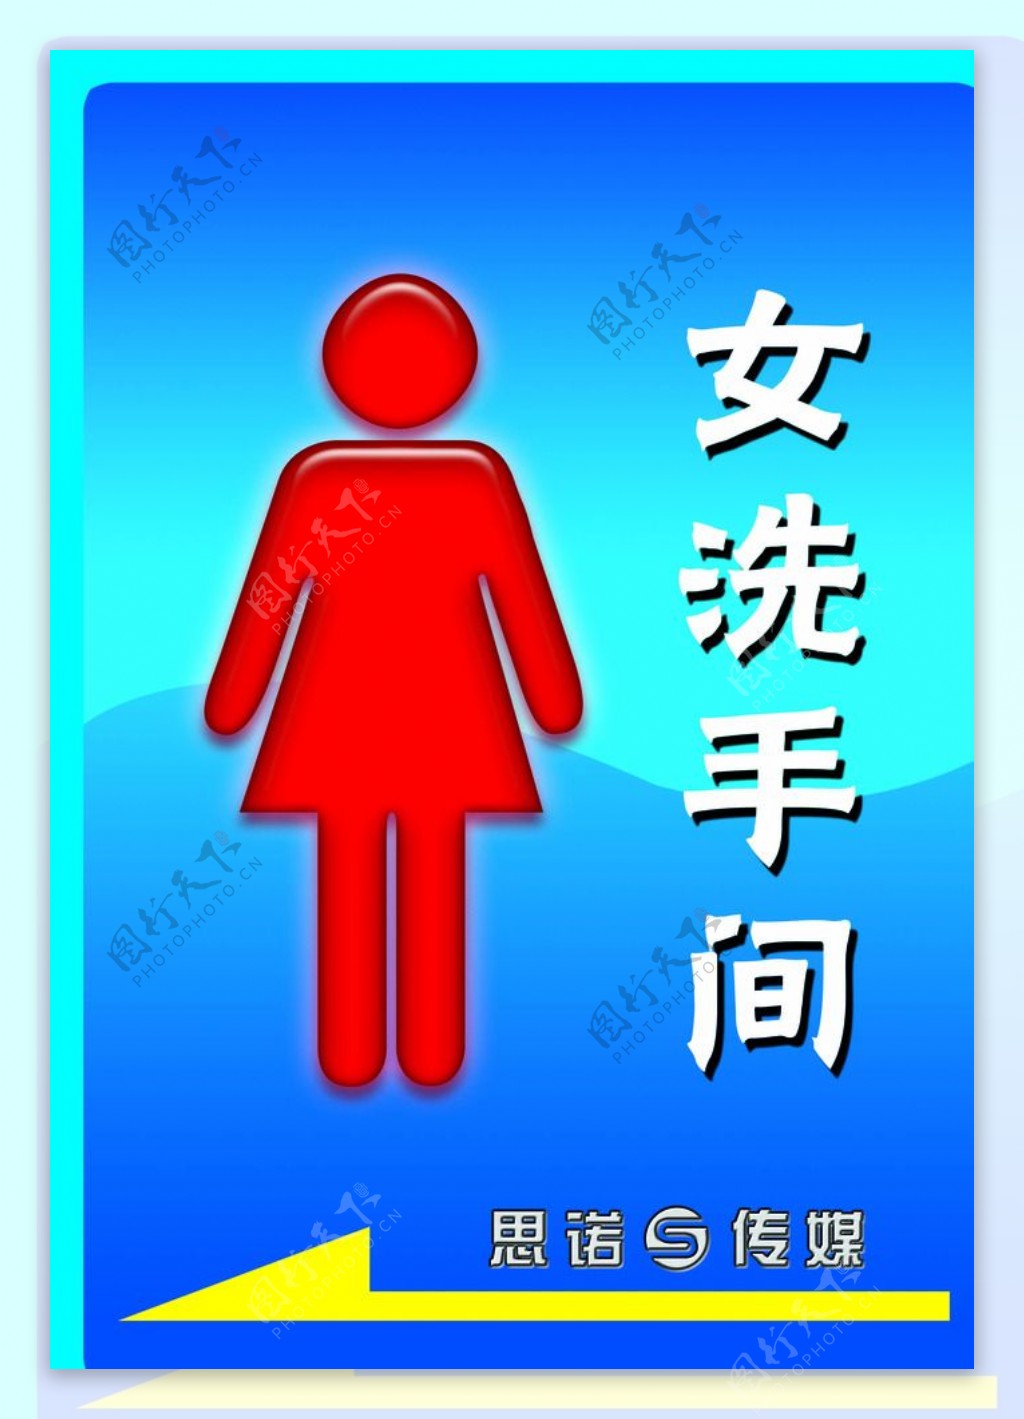 女厕所标识图片